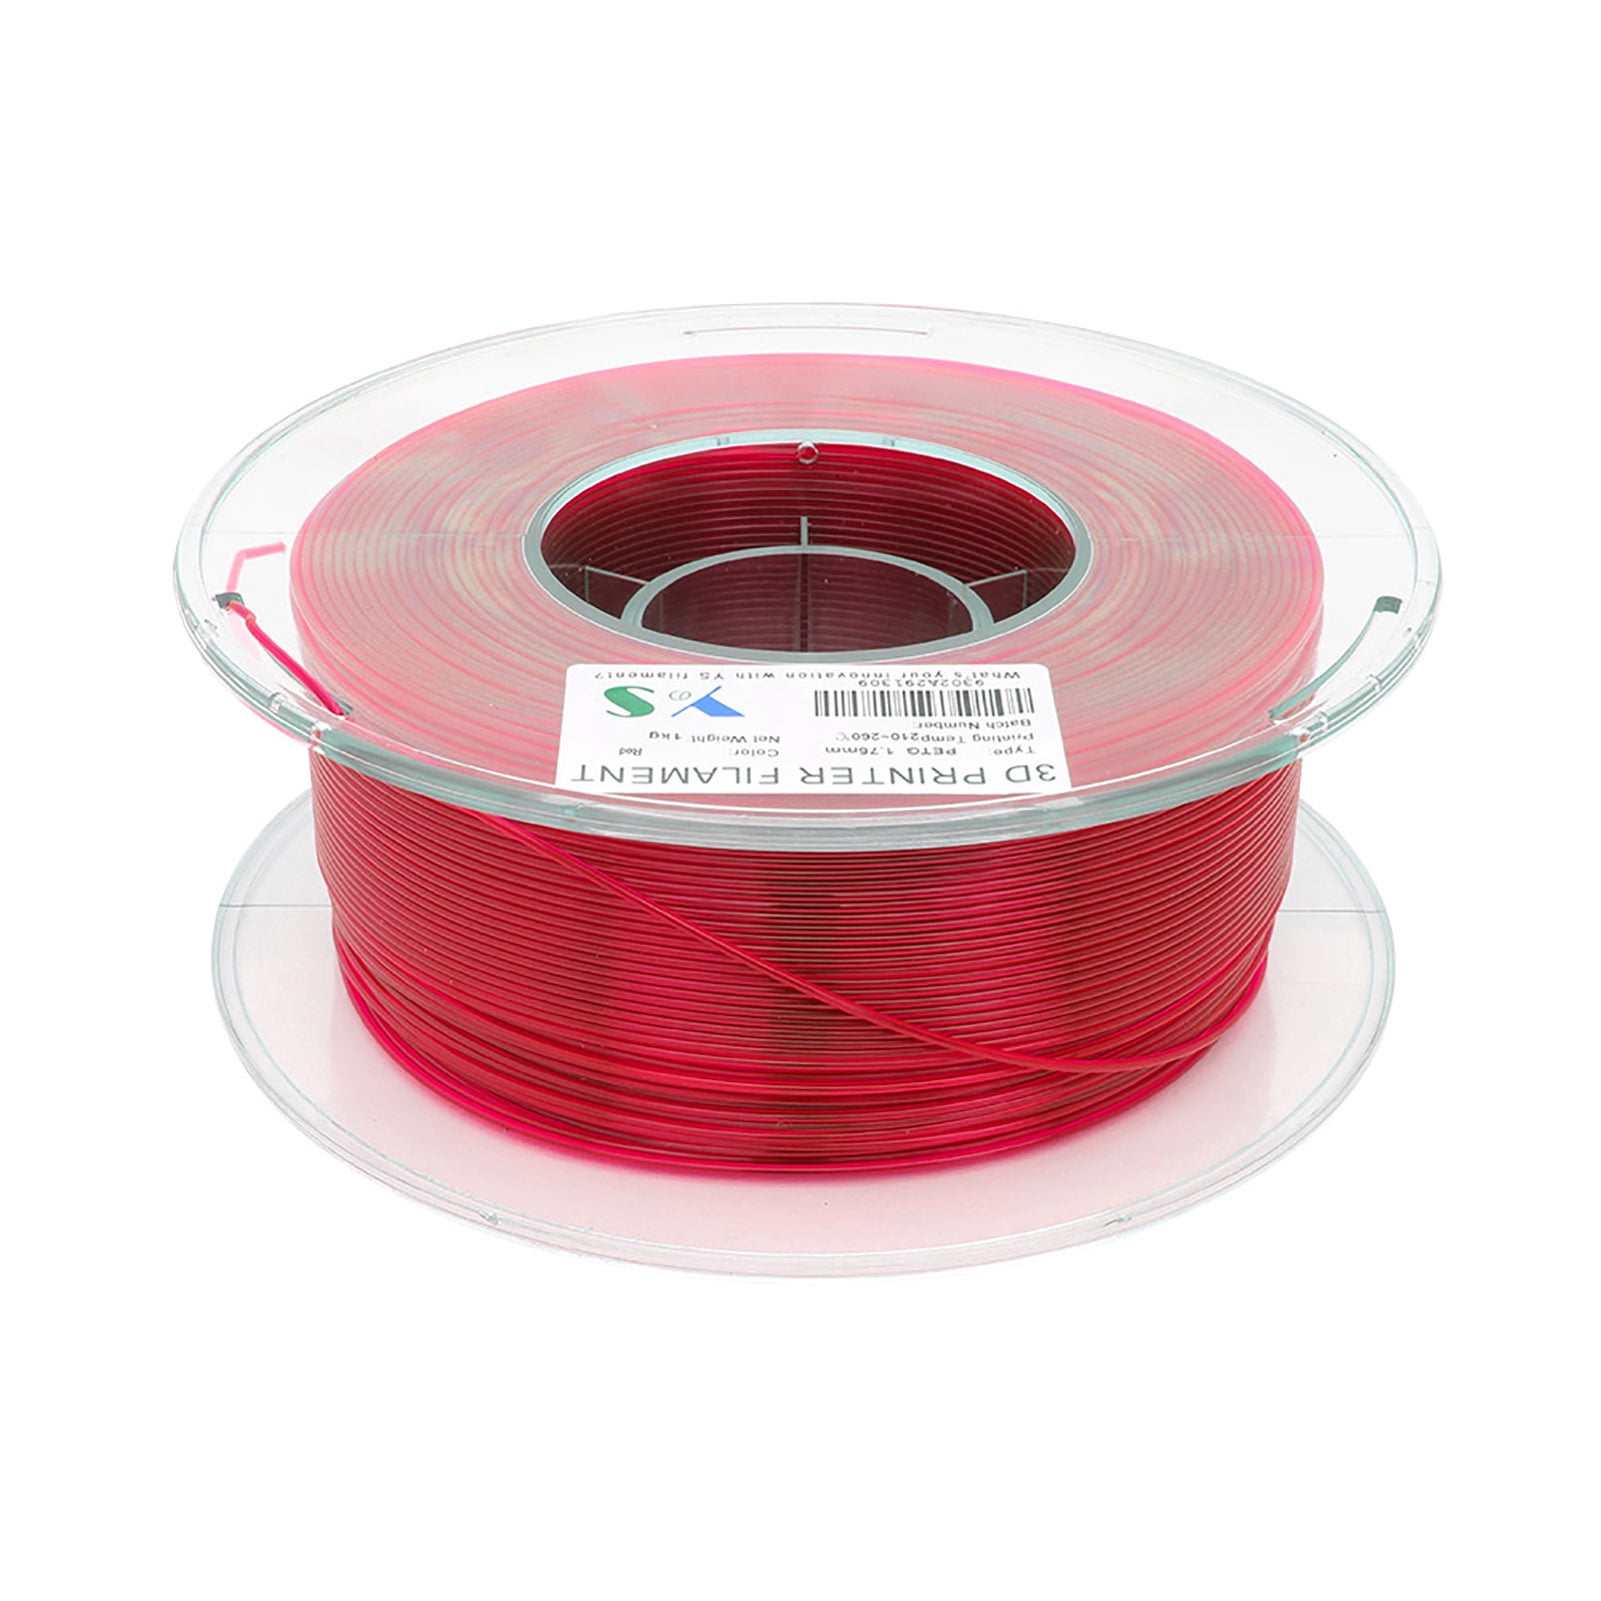 YouSu PETG Filament 3D Printer Filaments 1.75 MM Dimensional 1KG Spool Red C2P6 